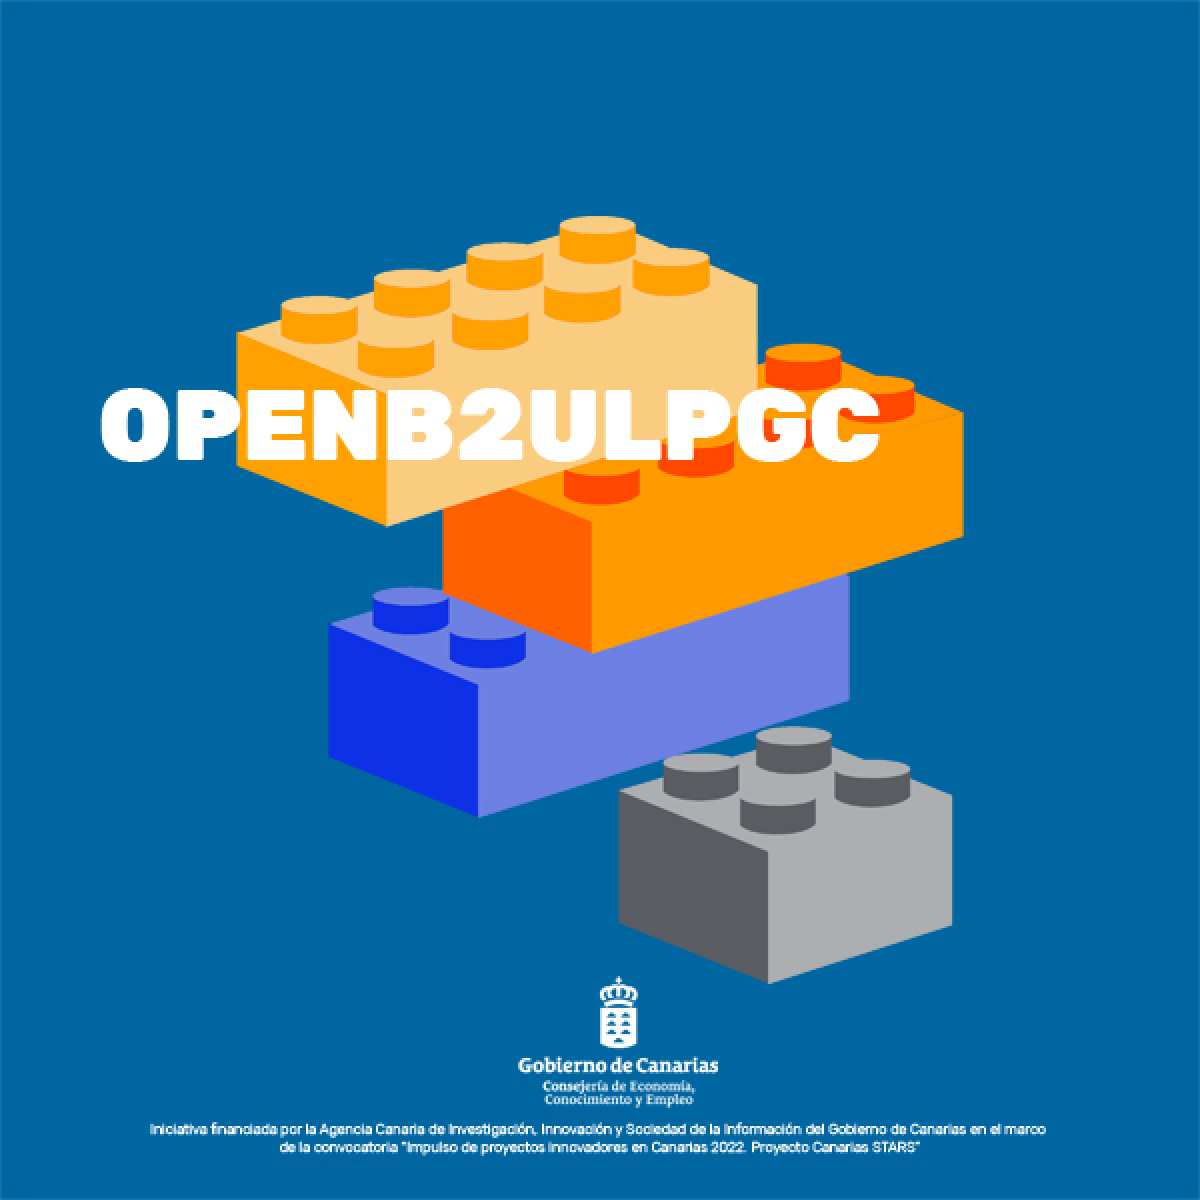 OPEN B2ULPGC, Innovación abierta universidad y empresa